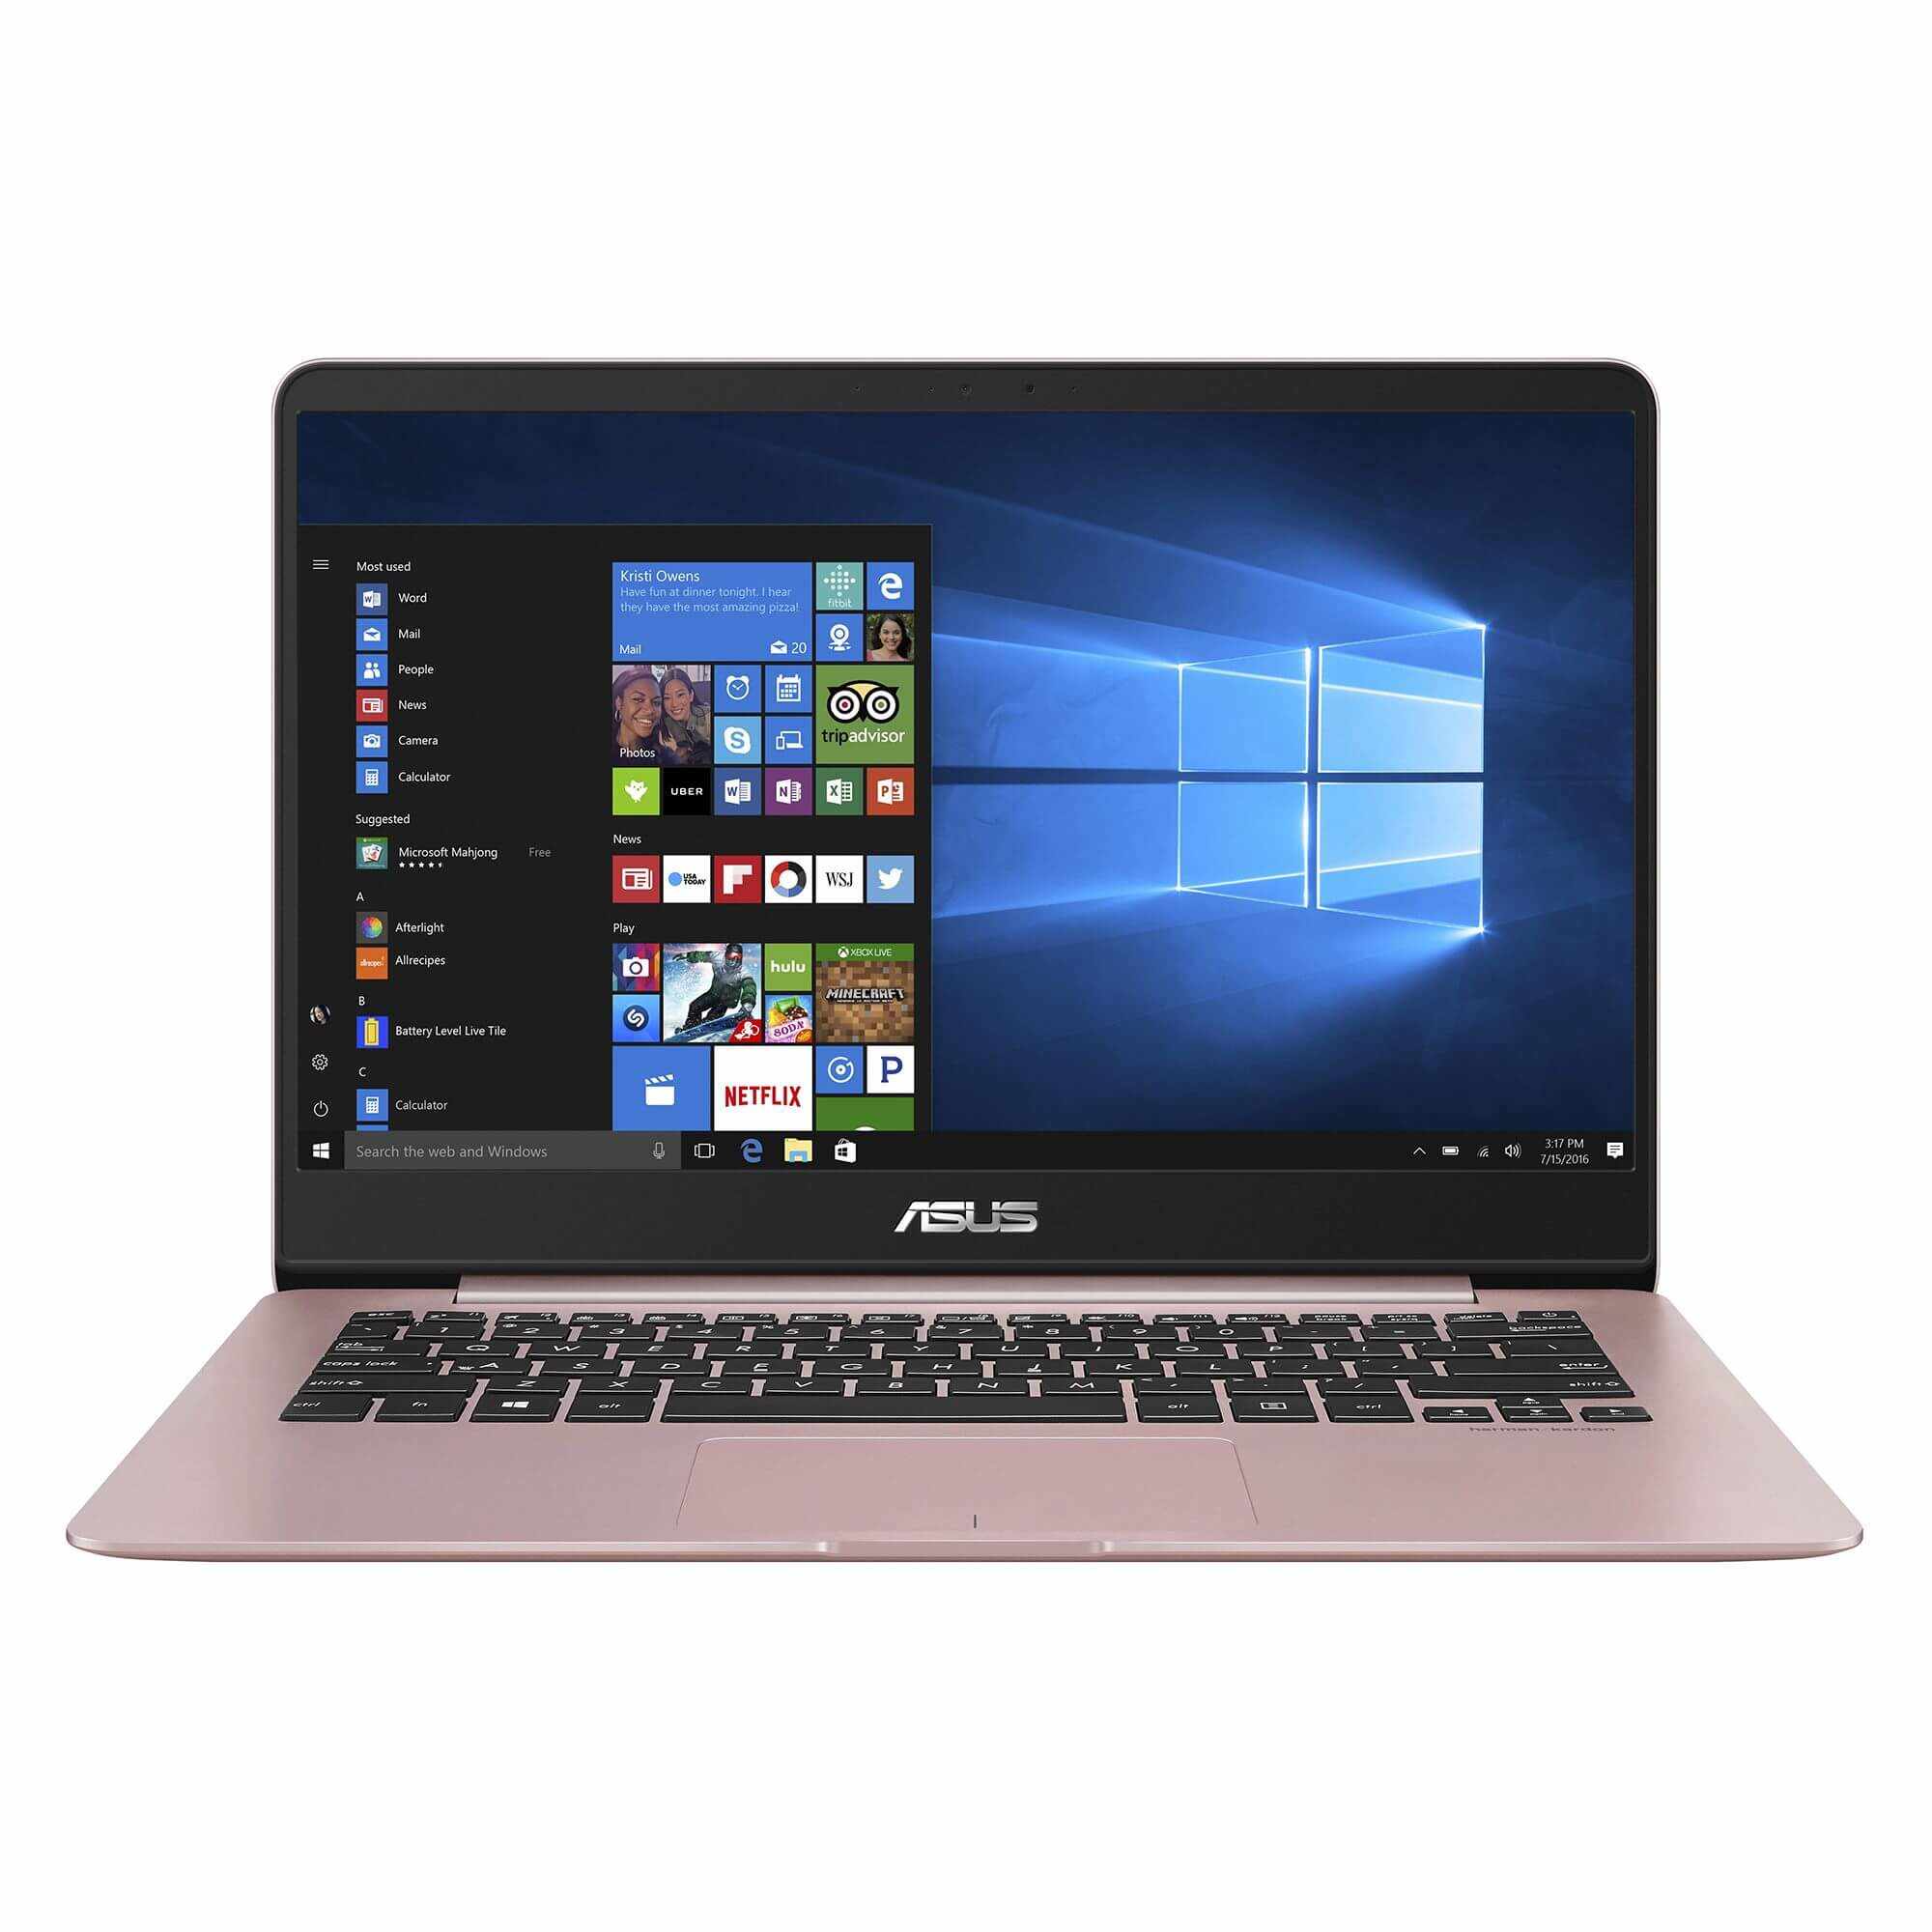 Laptop Asus ZenBook UX430UQ-GV008T, Intel Core i5-7200U, 8GB DDR4, SSD 256GB, nVidia GeForce 940MX 2GB, Windows 10